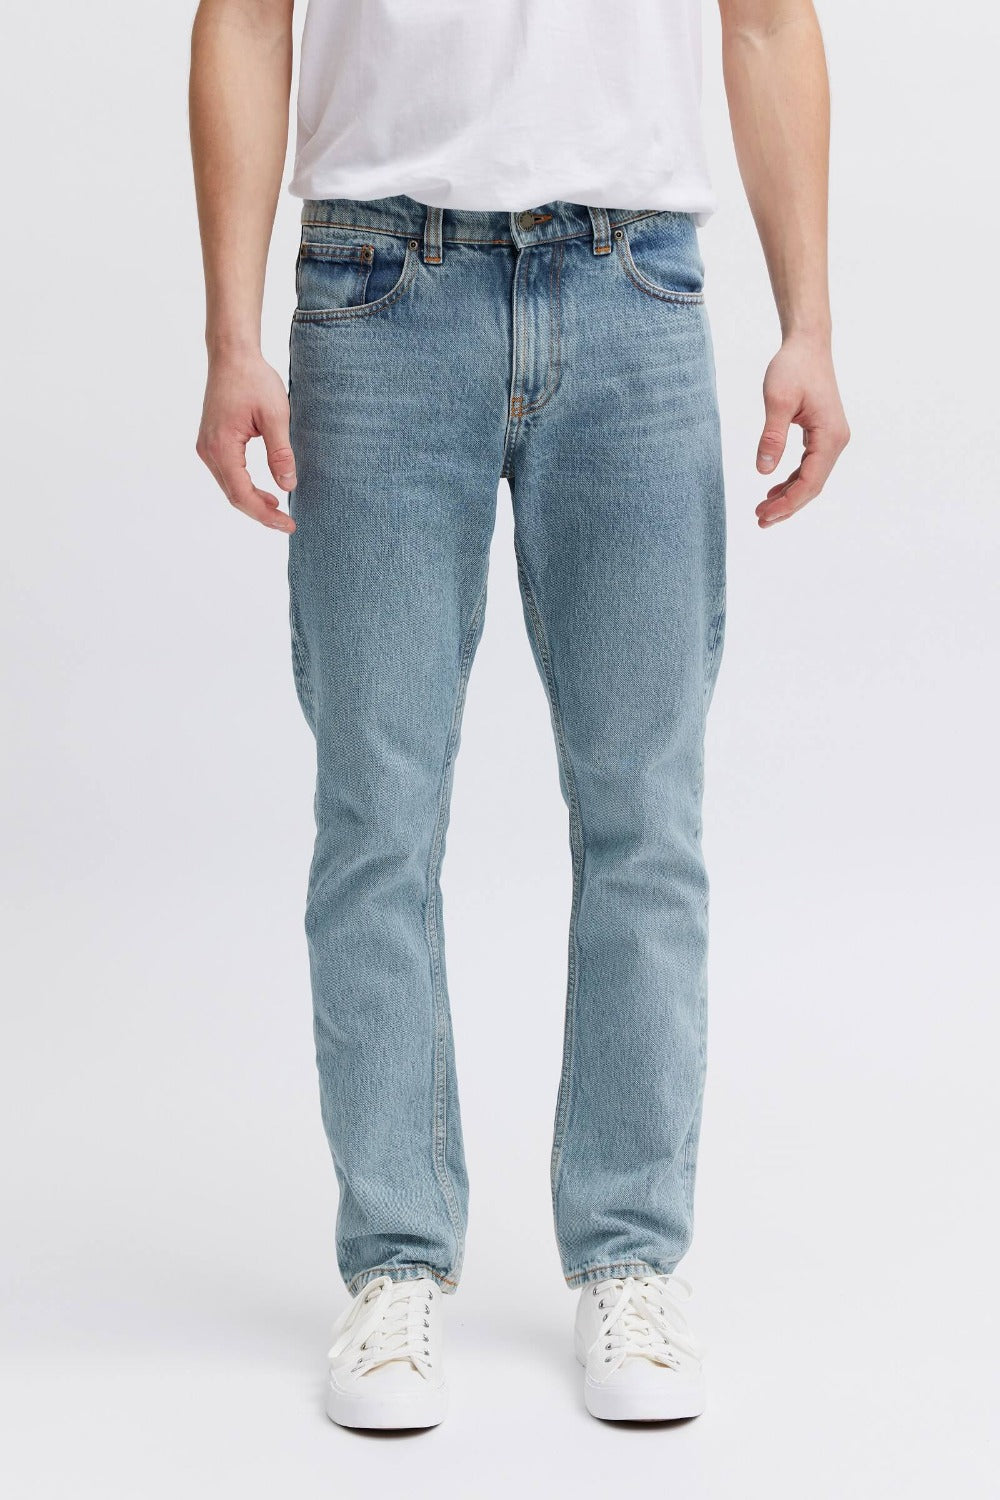 organic jeans for men 